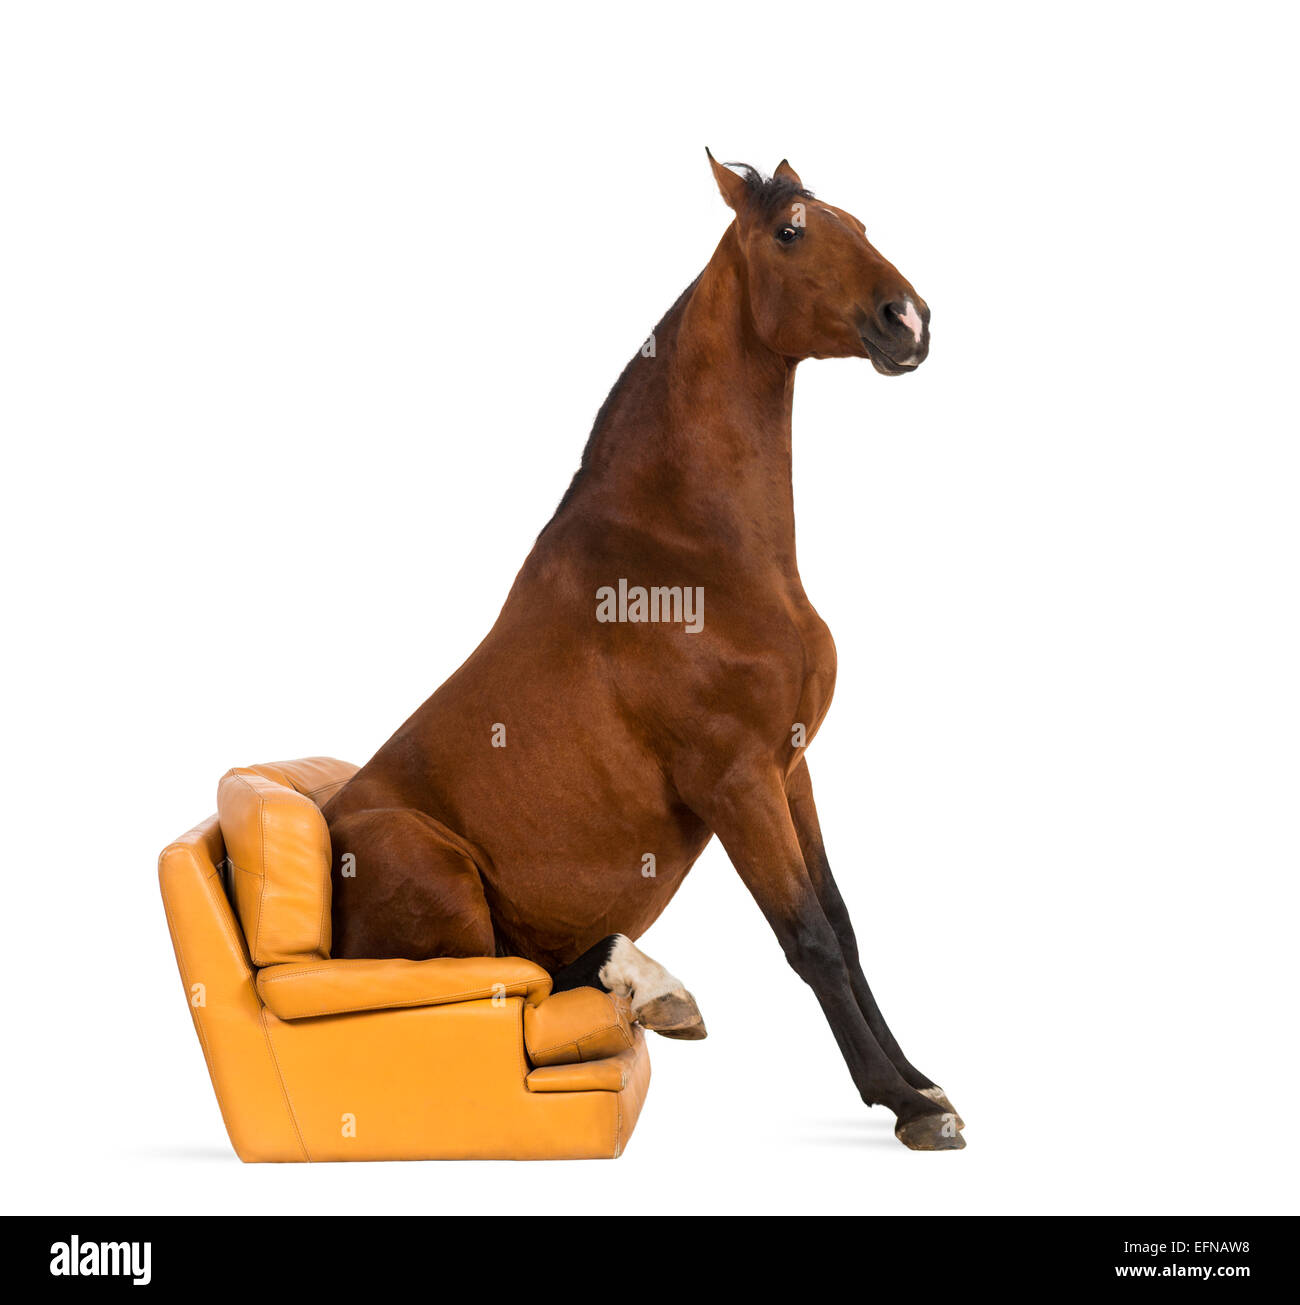 Лошадка сидит. Сидячая лошадь. Лошадь сидит. Конь сидит. Лошадь сидя.